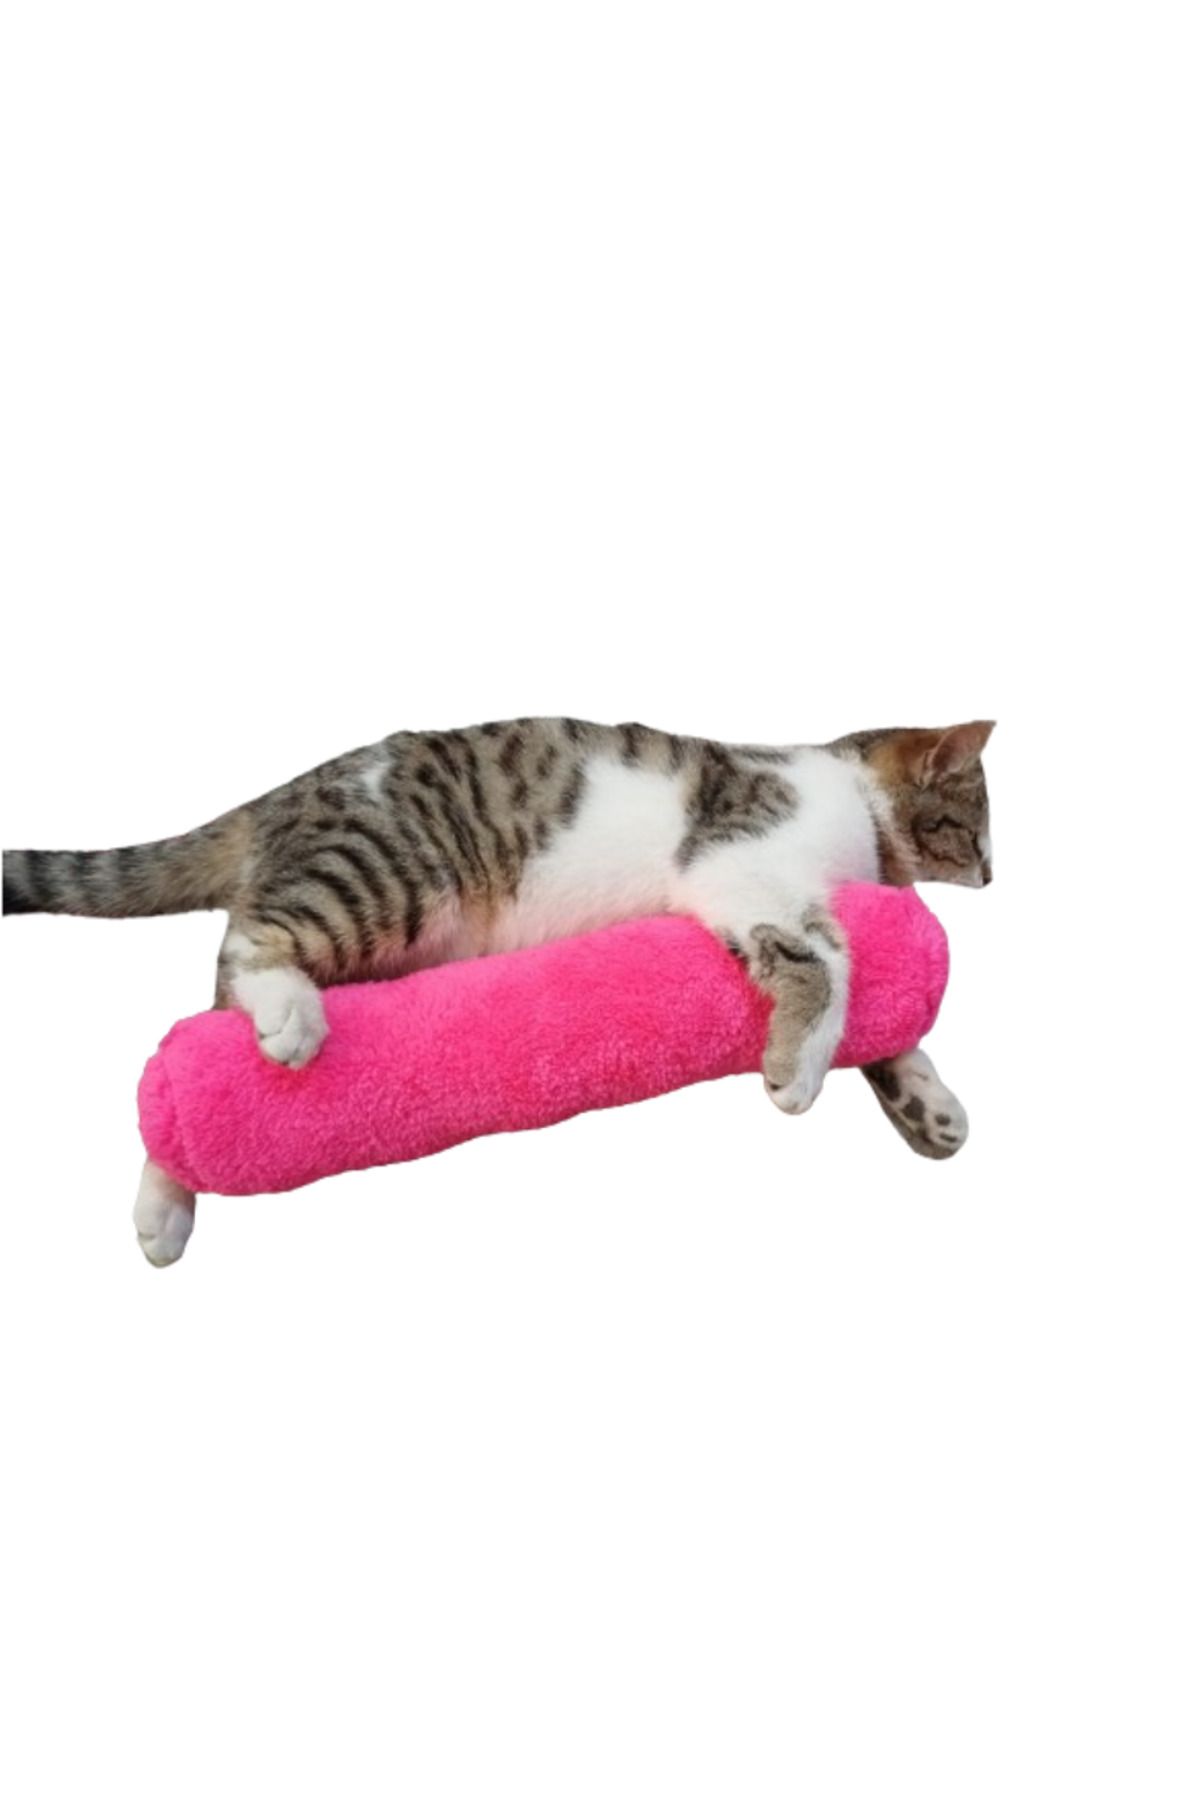 TİNEKE Kedi Oyuncağı Sarılma Yastığı Uyku Oyuncağı Kedi Otlu 30 Cm Peluş ( 1 Adet ) Fuşya